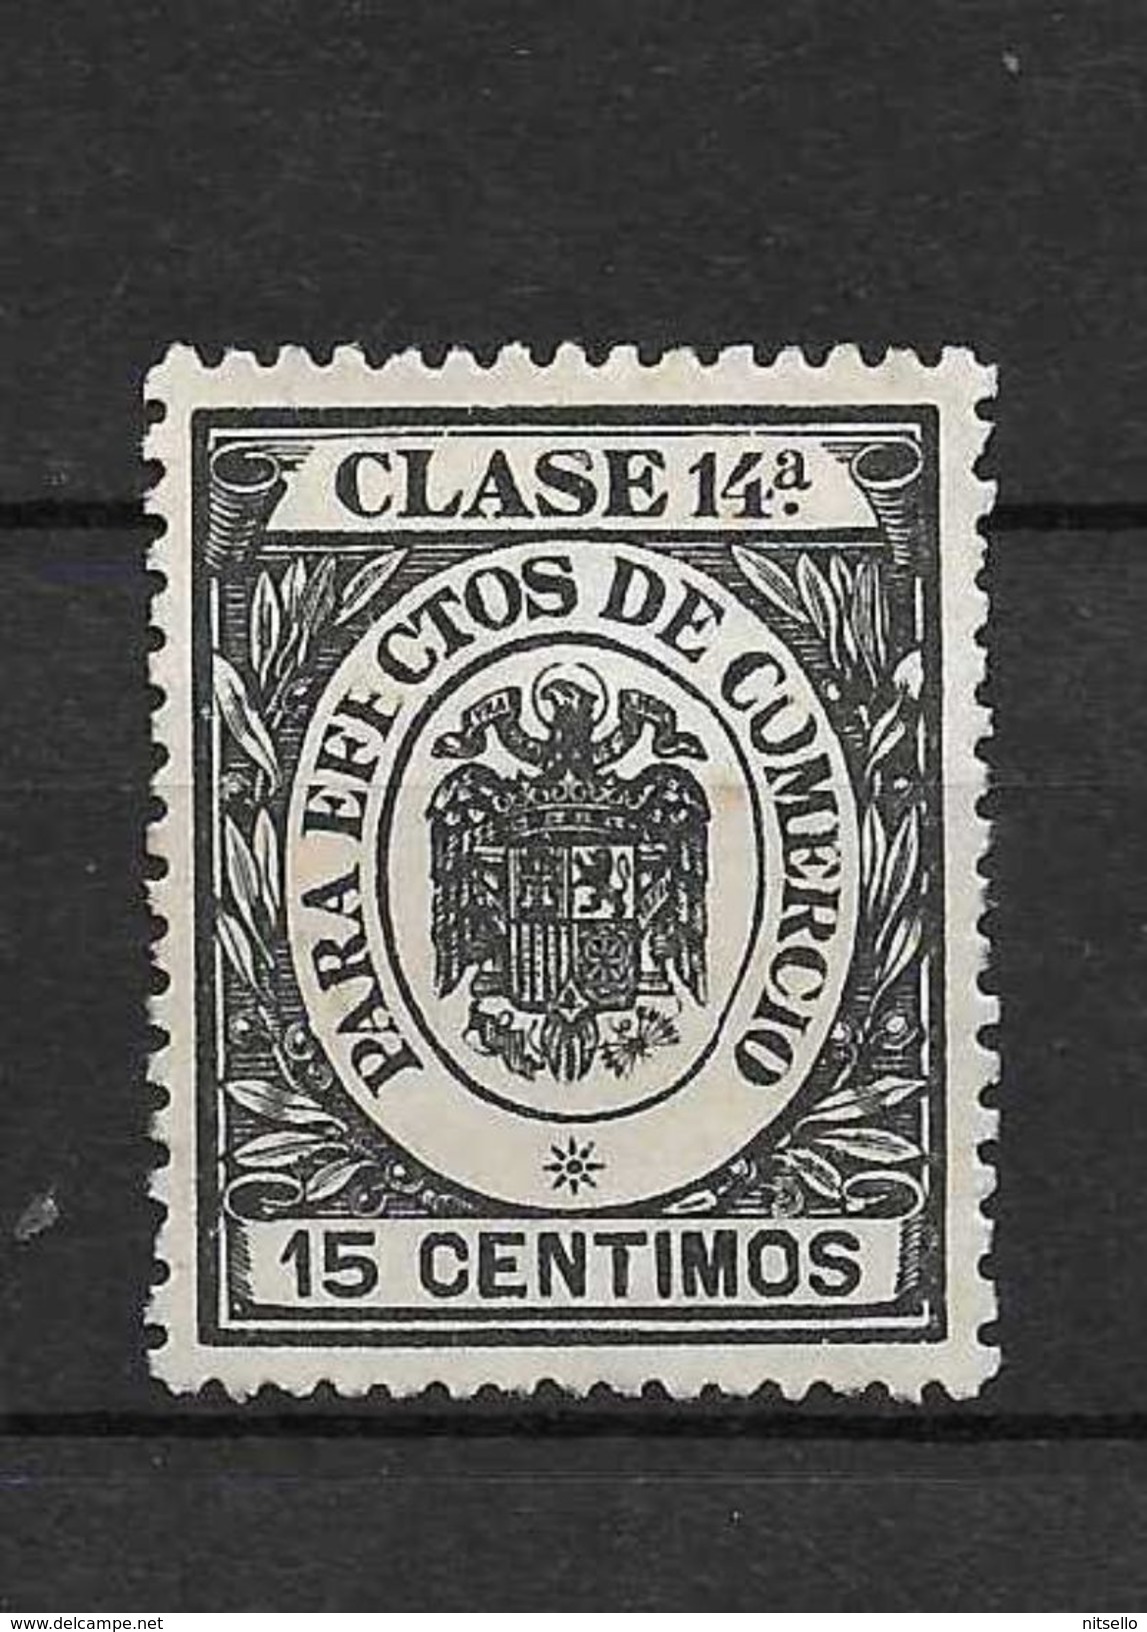 LOTE 1891 D  ///  ESPAÑA  SELLOS FISCALES  -  PARA EFECTOS DE COMERCIO CLASE 14ª - Revenue Stamps